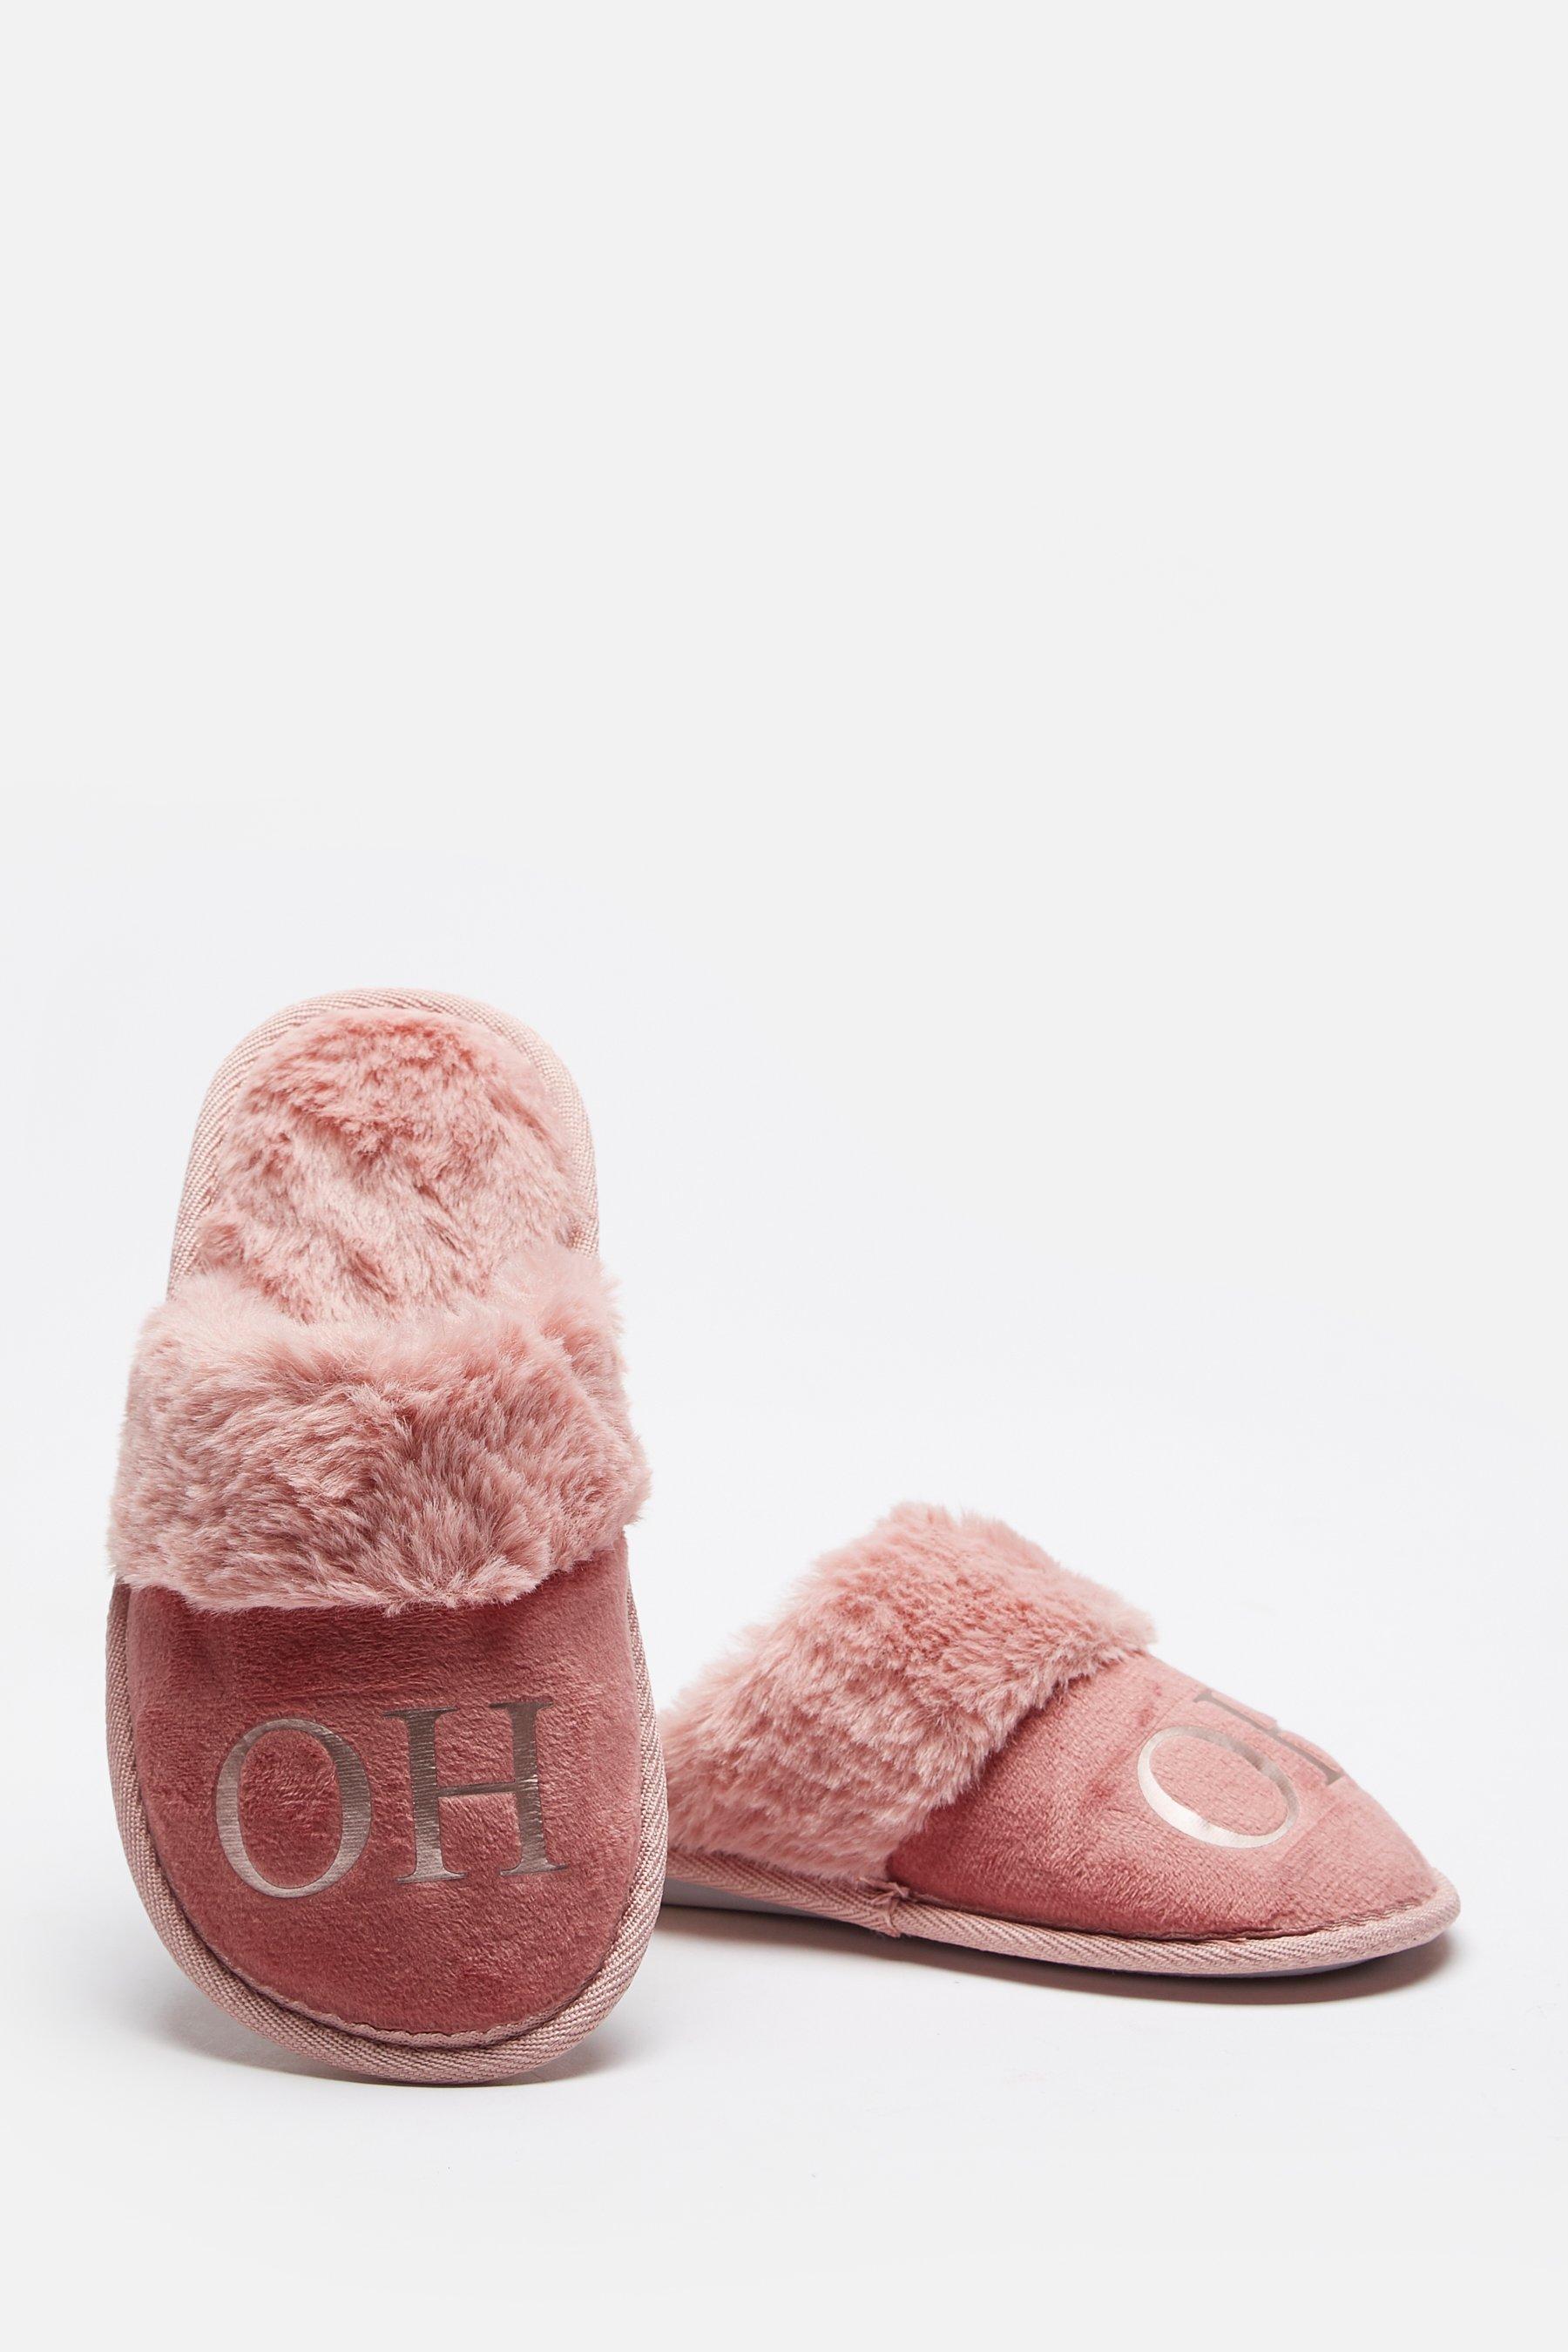 personalised bedroom slippers